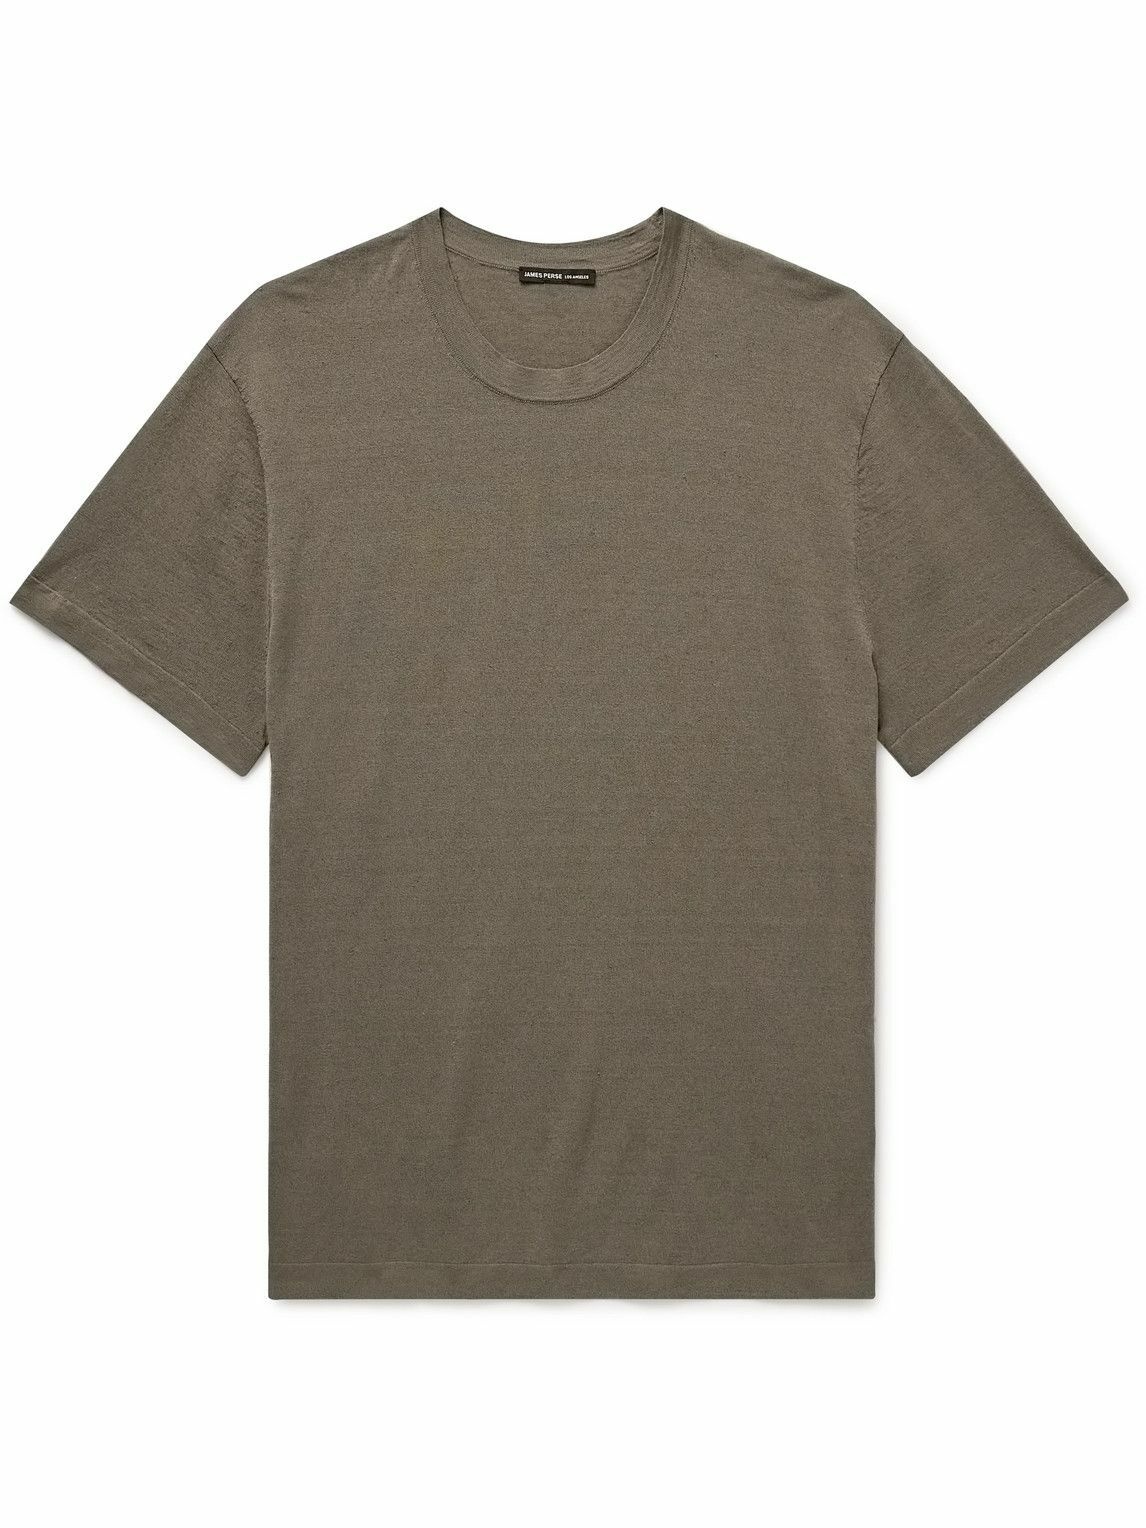 James Perse - Linen-Blend T-Shirt - Neutrals James Perse